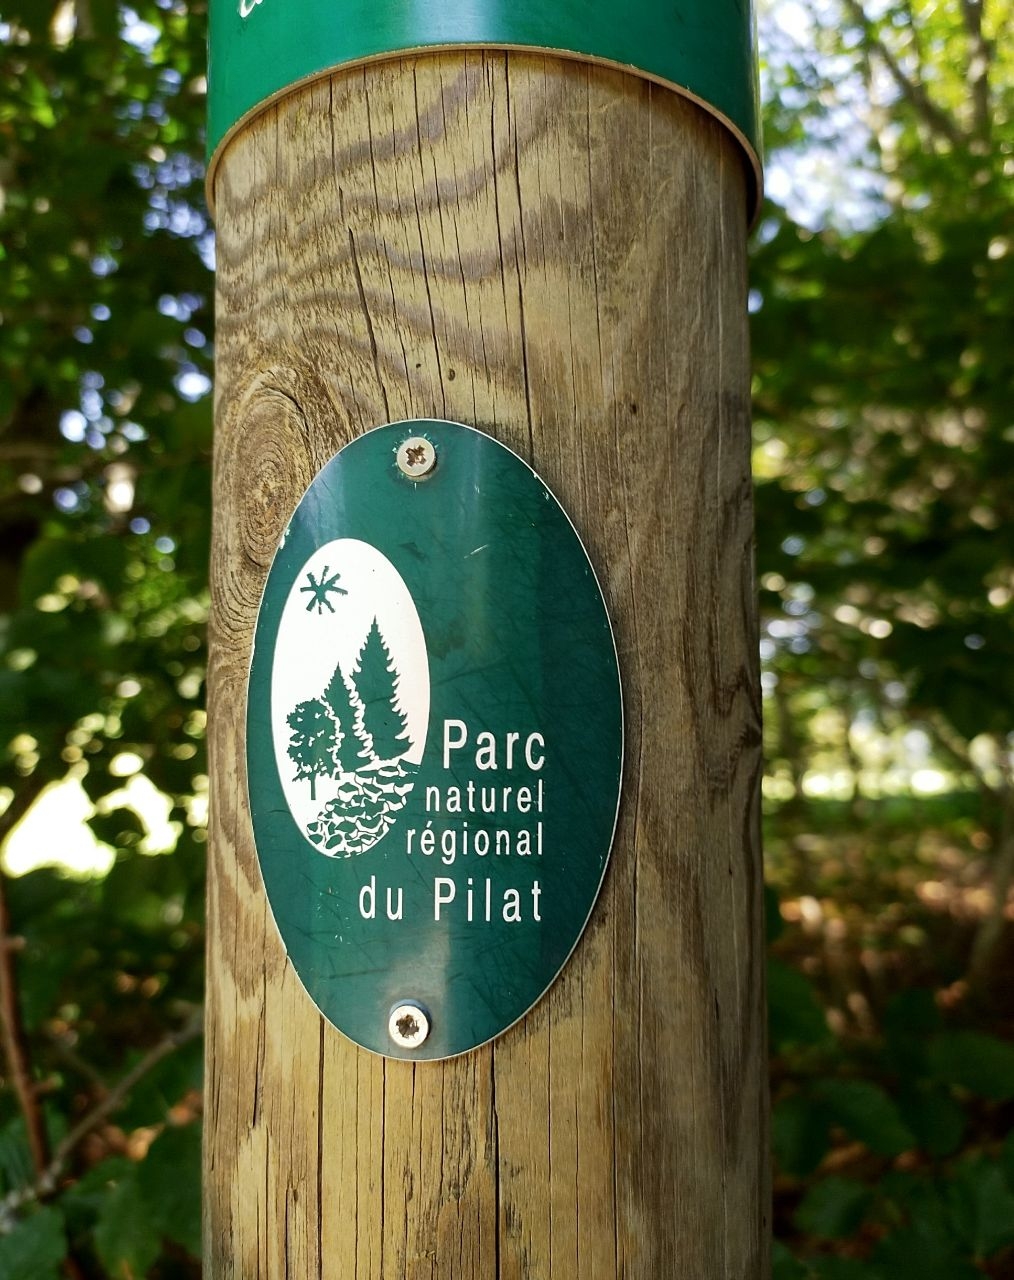 Природный региональный парк Пилат Пилат Региональный Природный Парк, Франция